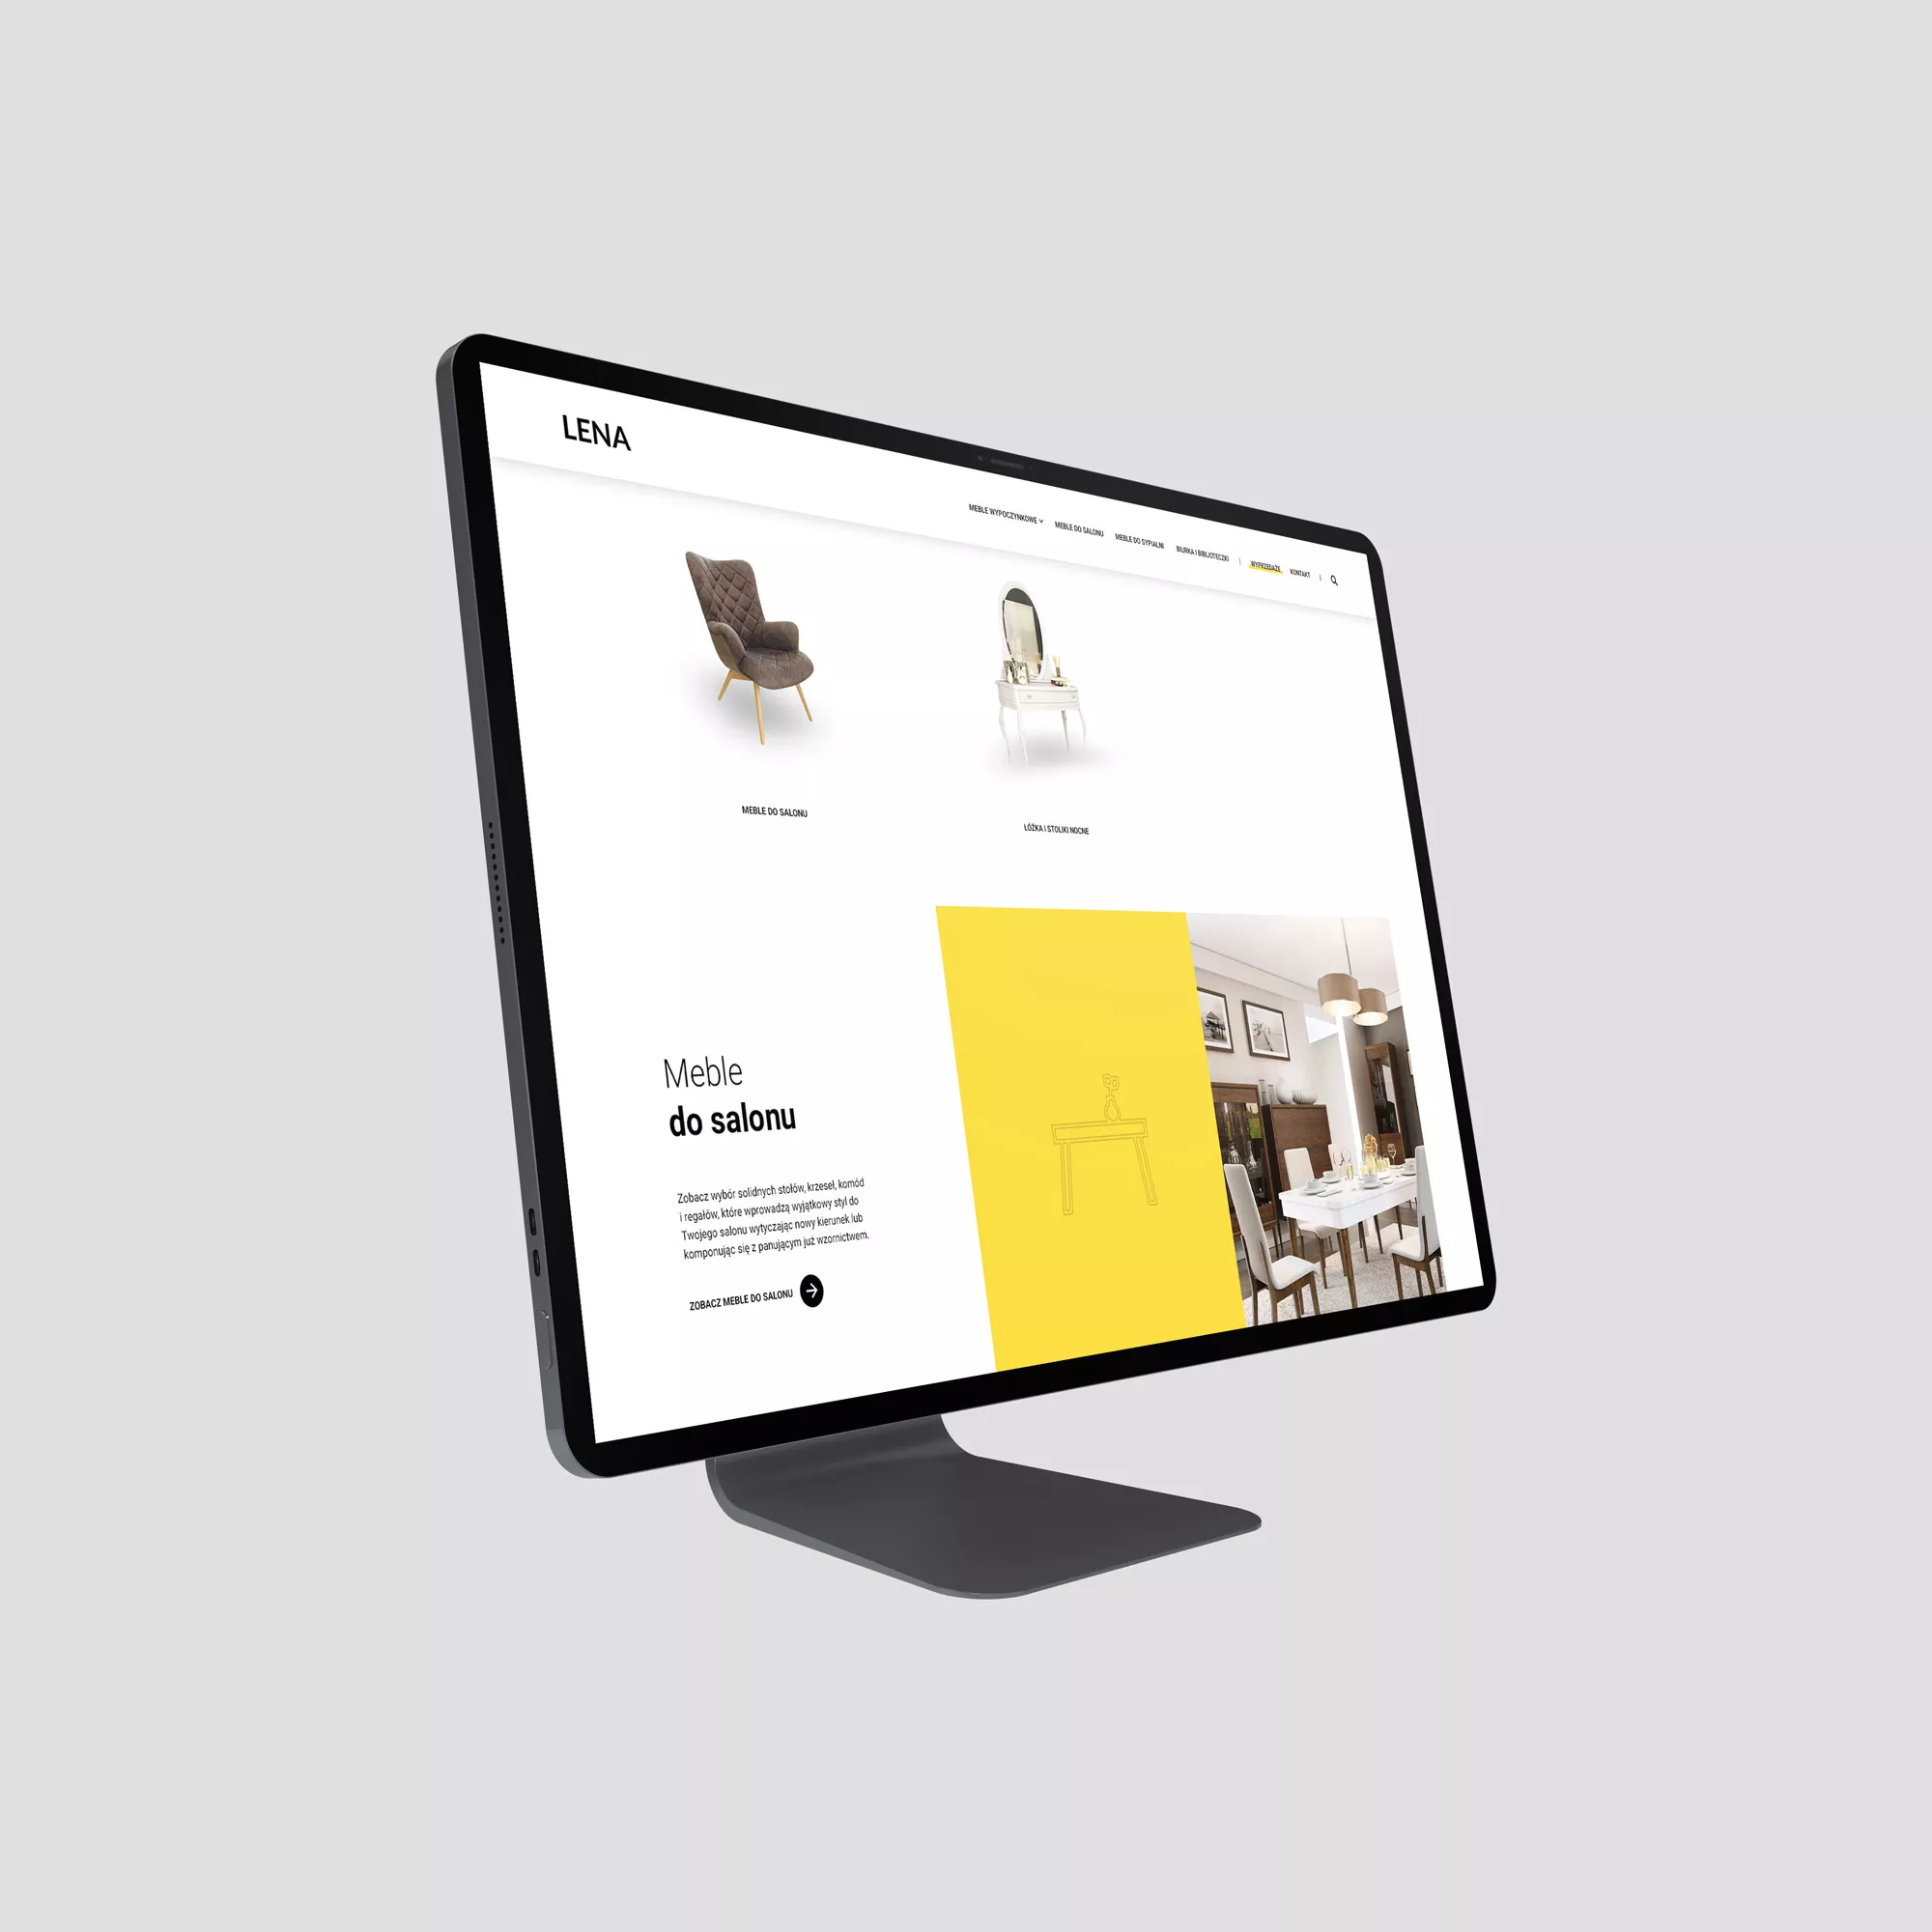 LENA Meble - projekt strona internetowa dla producenta mebli, wizualizacja kategorii produktów